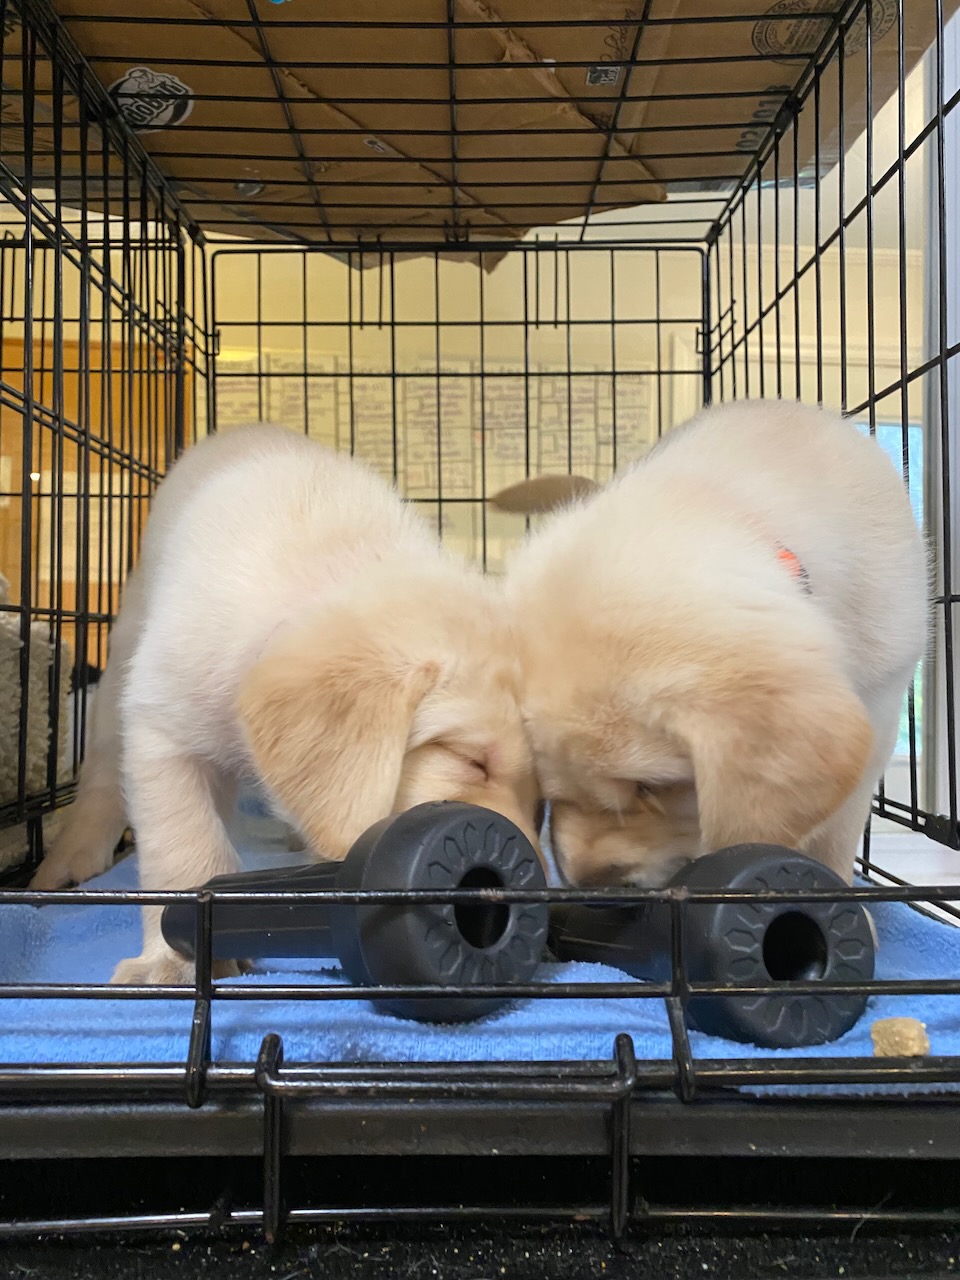 puppy in a crate